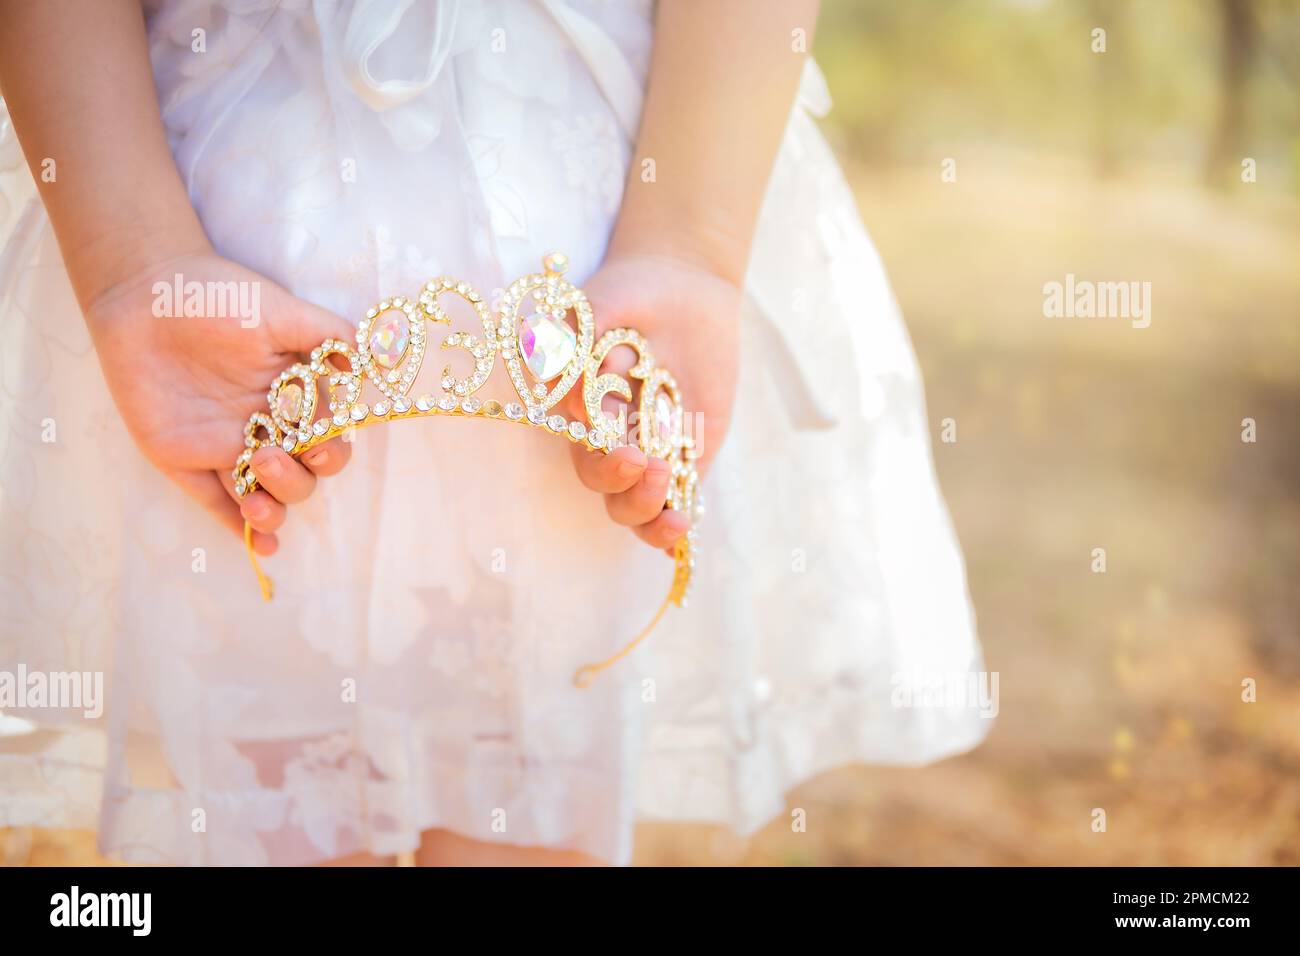 La bambina in vestito bianco è sulla schiena che tiene una corona principessa, in una foresta da sogno, spazio copia, tema giorno dei bambini. Foto Stock